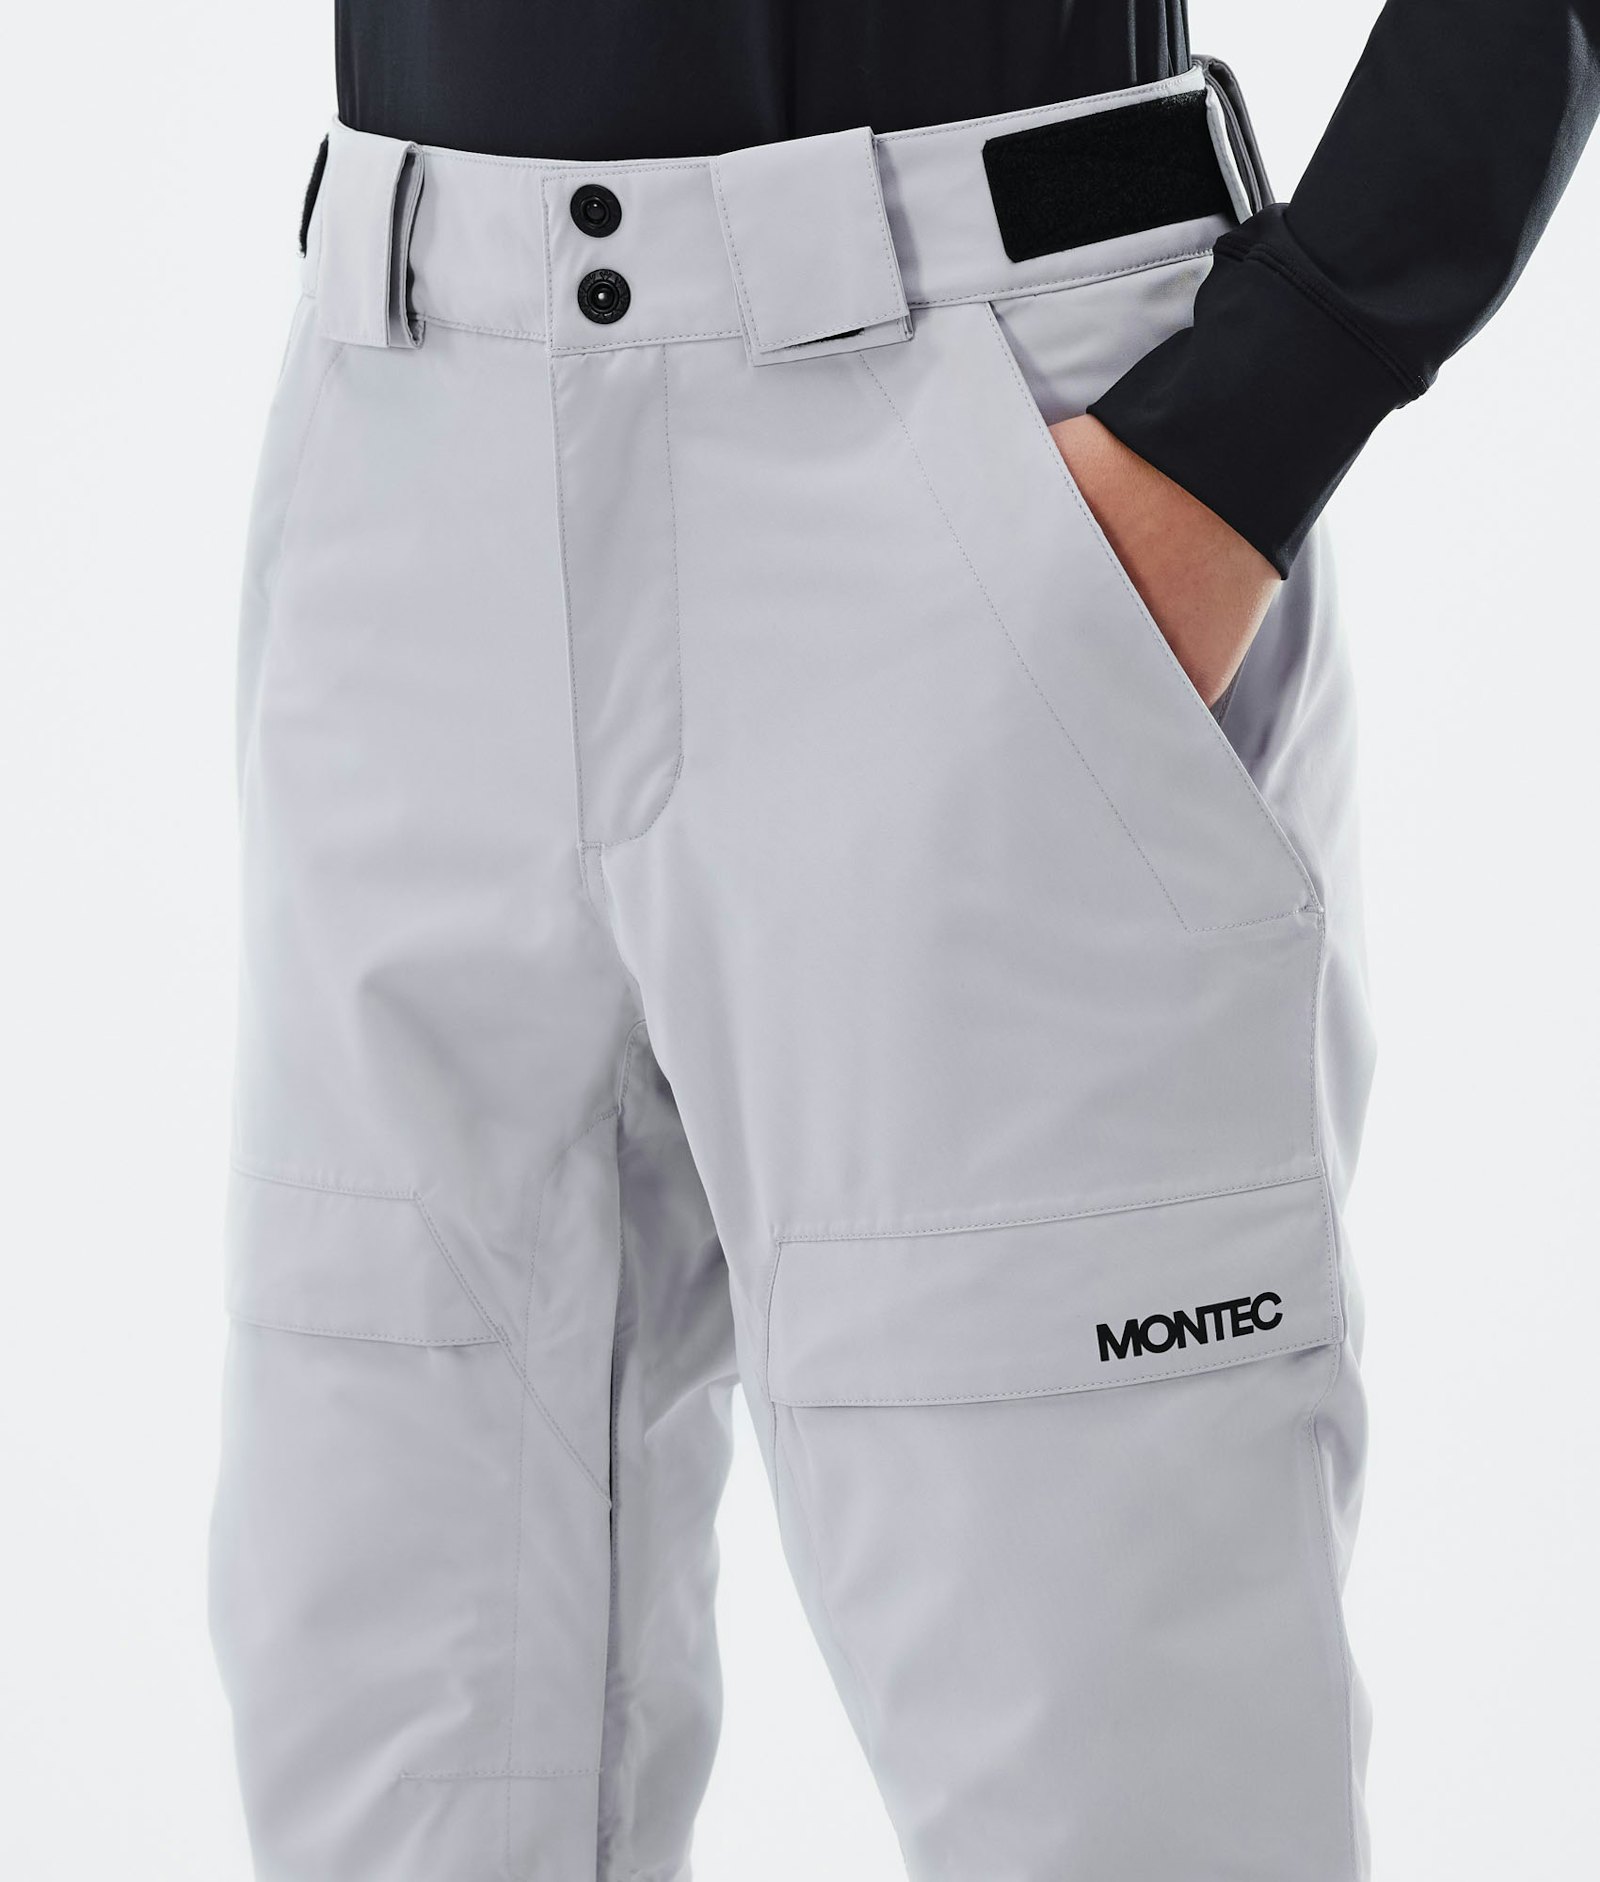 Montec Kirin W Pantalones Esquí Mujer Light Grey - Gris